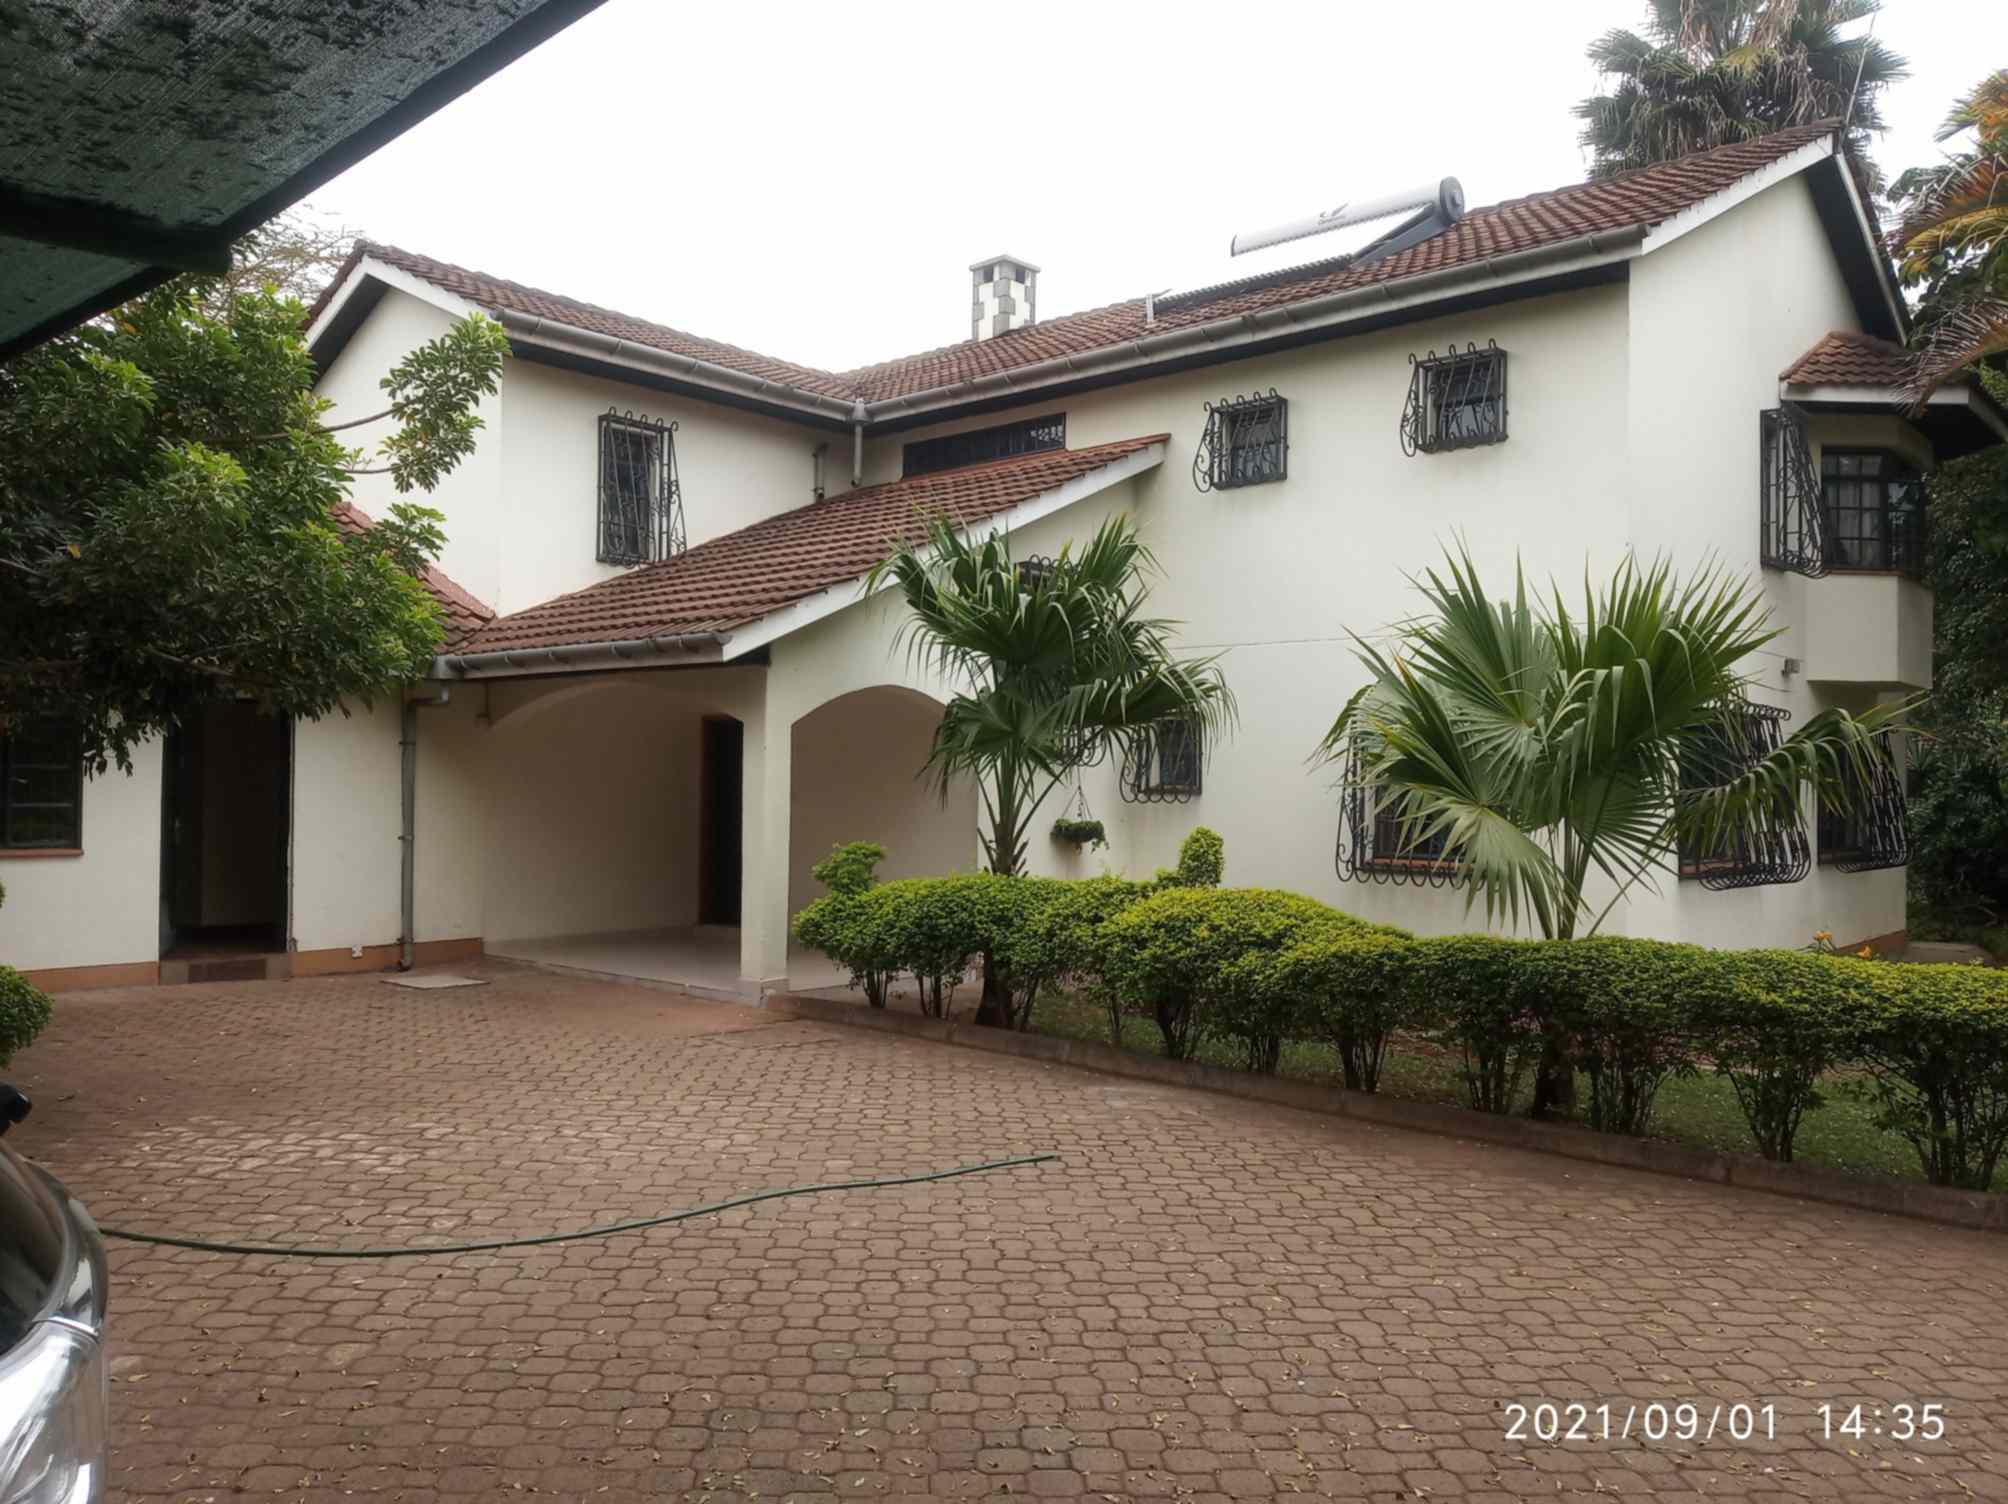 5 bedroom mansion in Runda Nairobi for rent